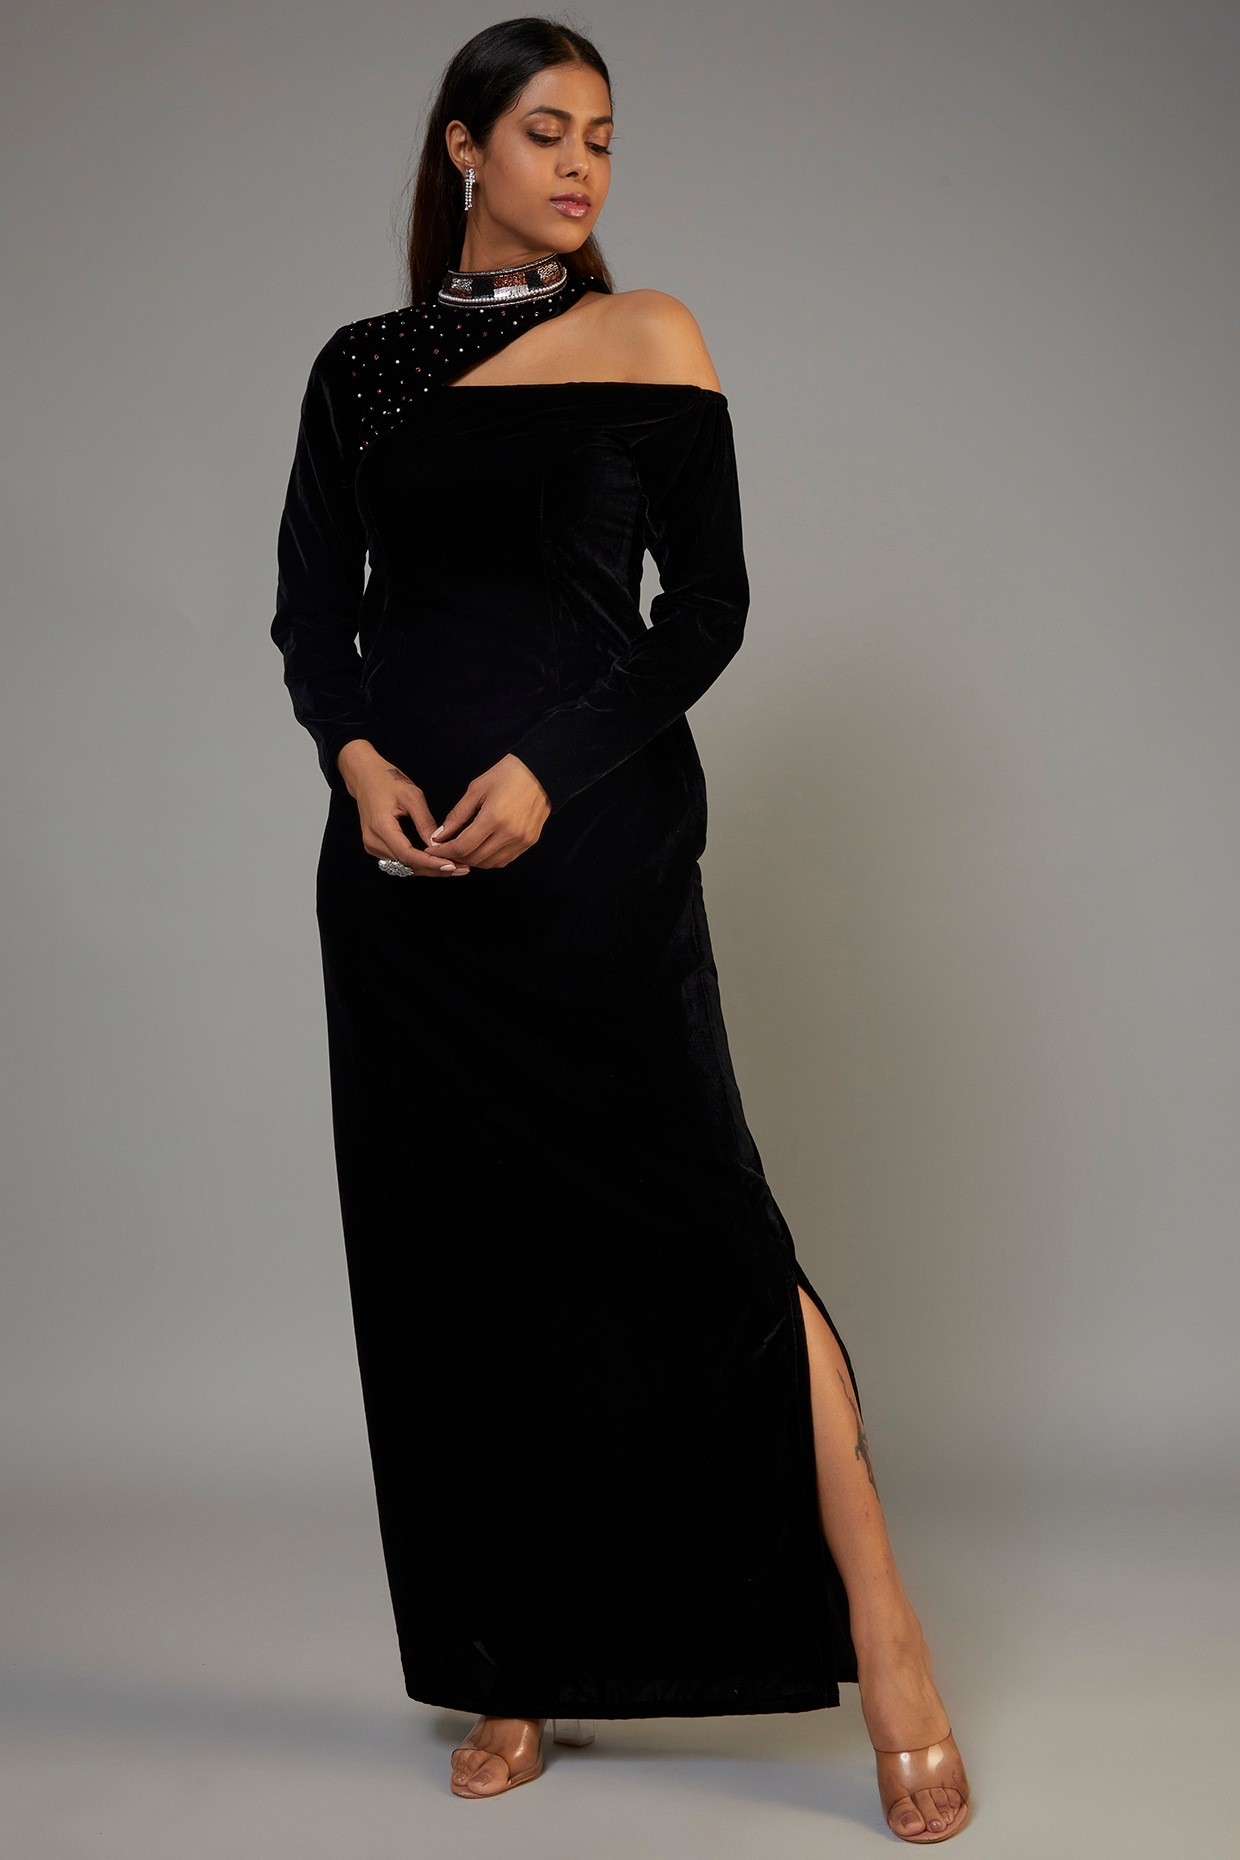 velvet dress design||Trendy new valvet dress desings 23/24 ||Western velvet  gown dress desings - YouTube